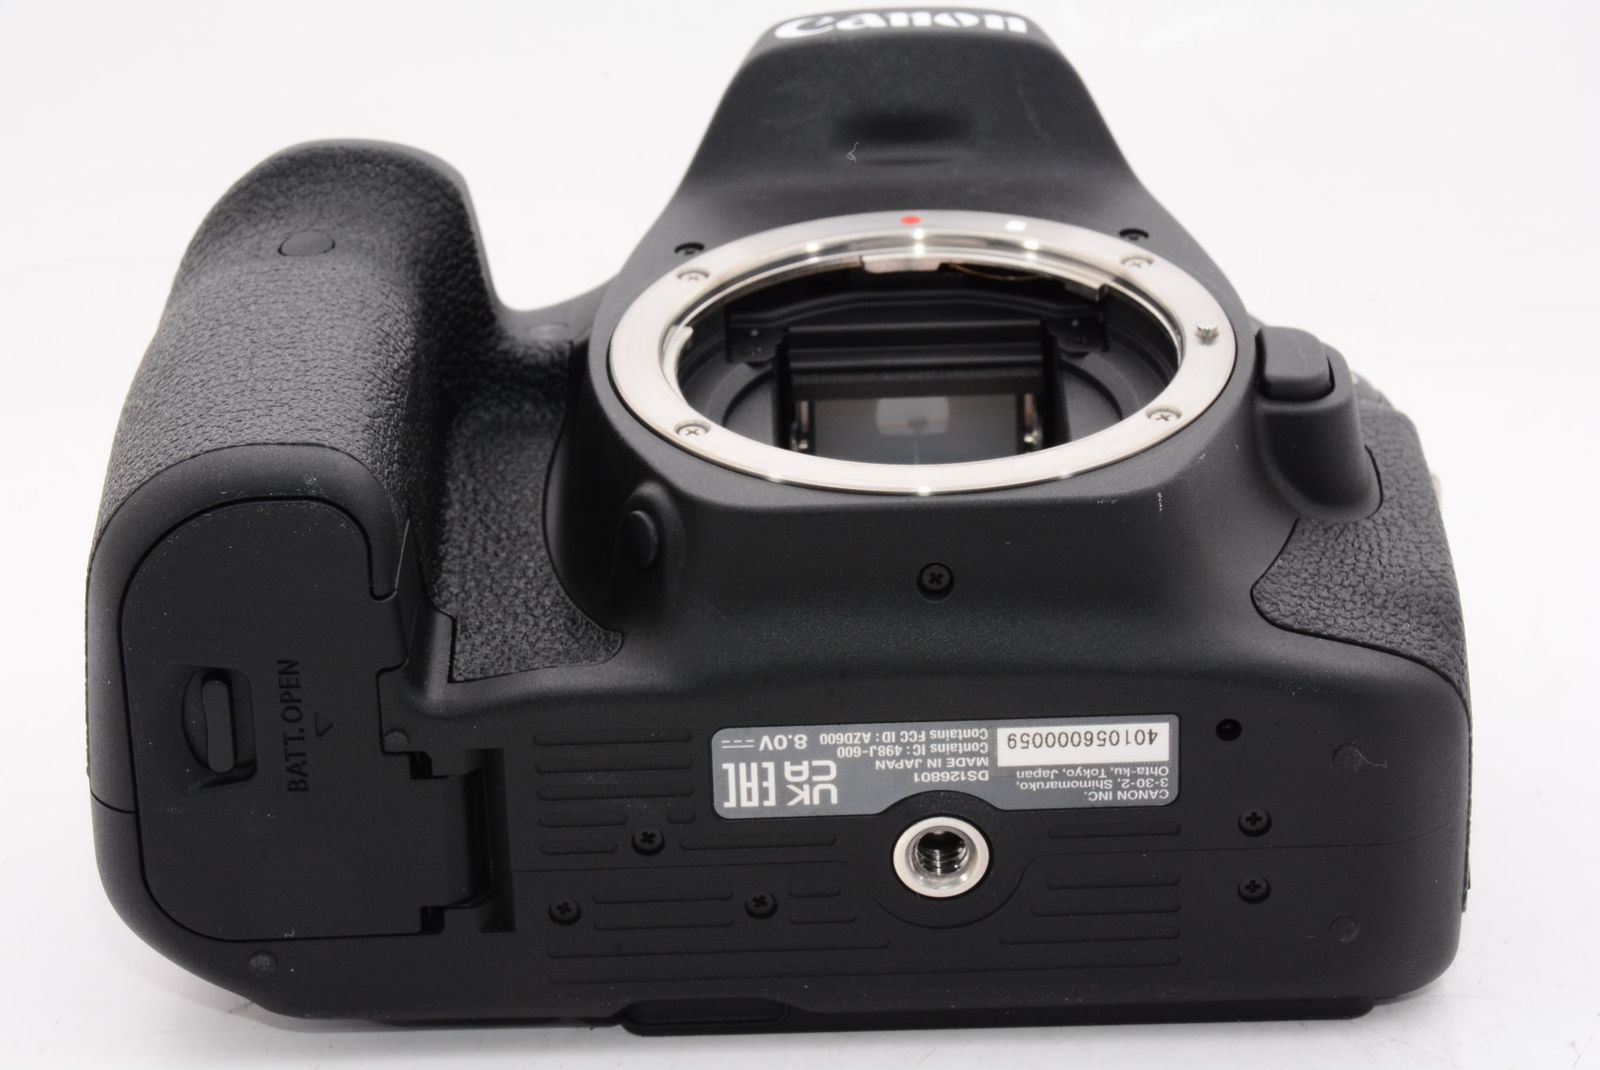 Canon デジタル一眼レフカメラ EOS 90D ボディー EOS90D メルカリShops